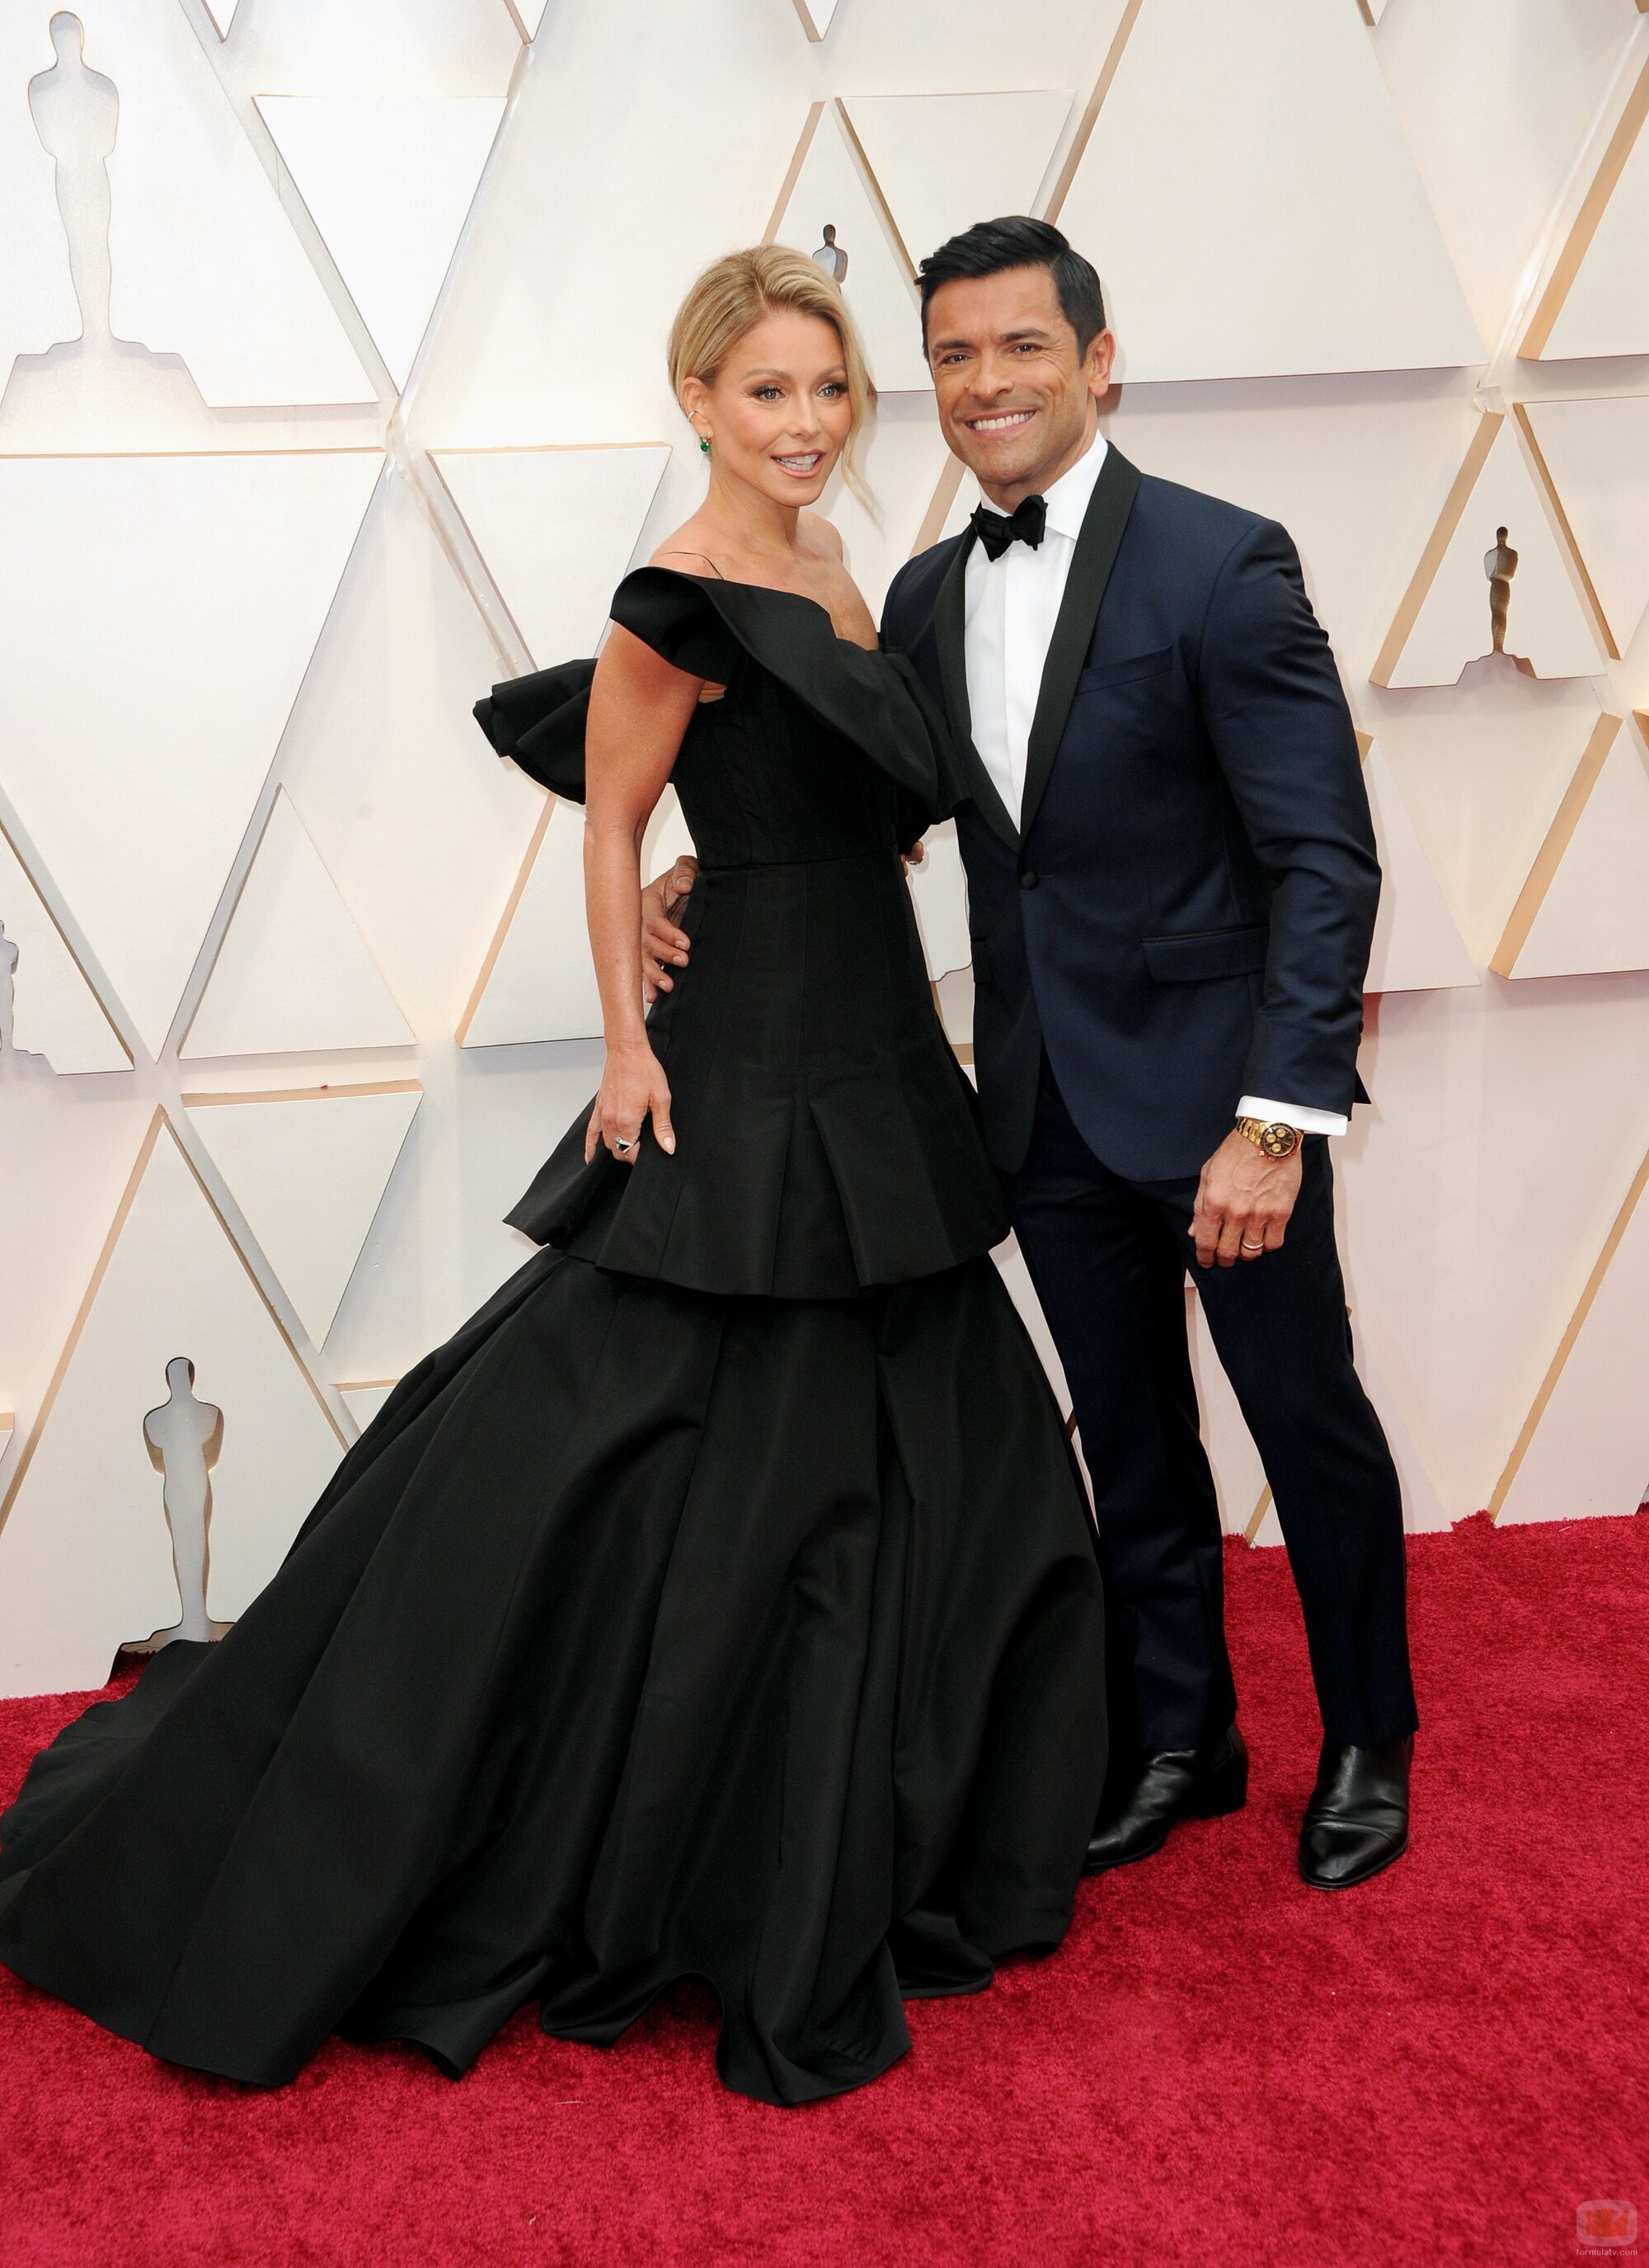 Kelly Ripa y Mark Consuelos en los Oscar 2020